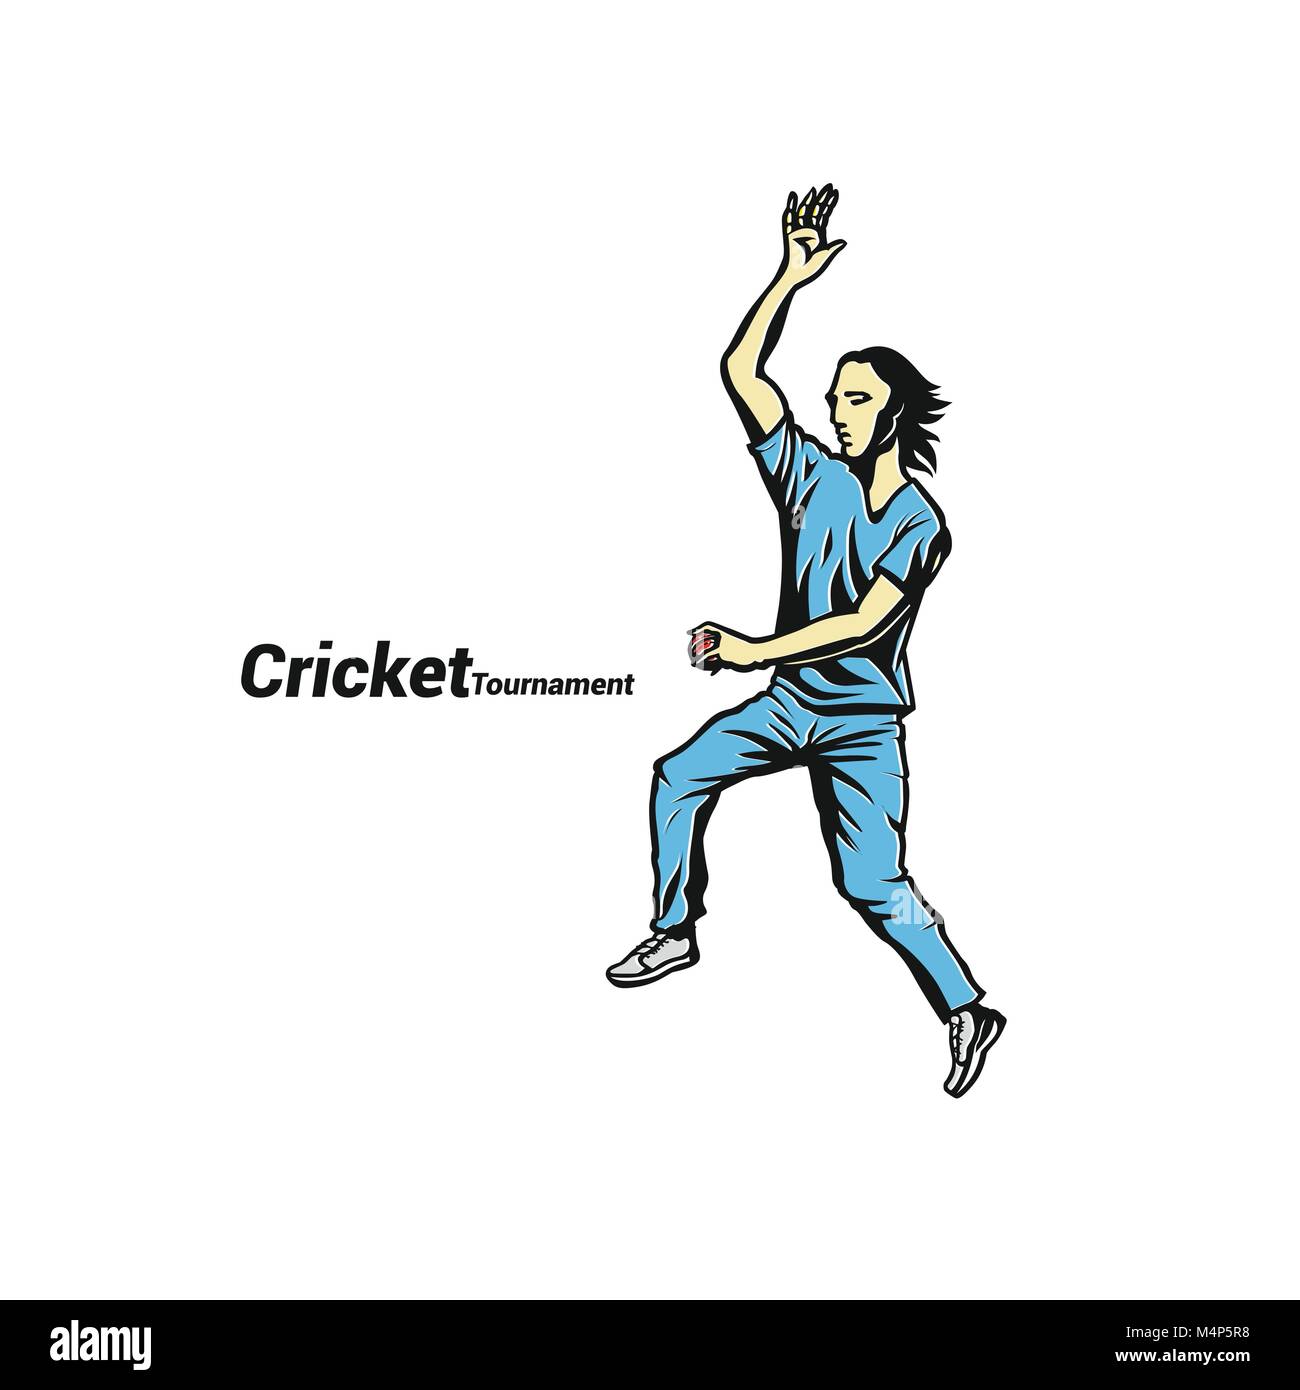 Cricket bowler ready to throw the ball vector illustration. Stock Vector